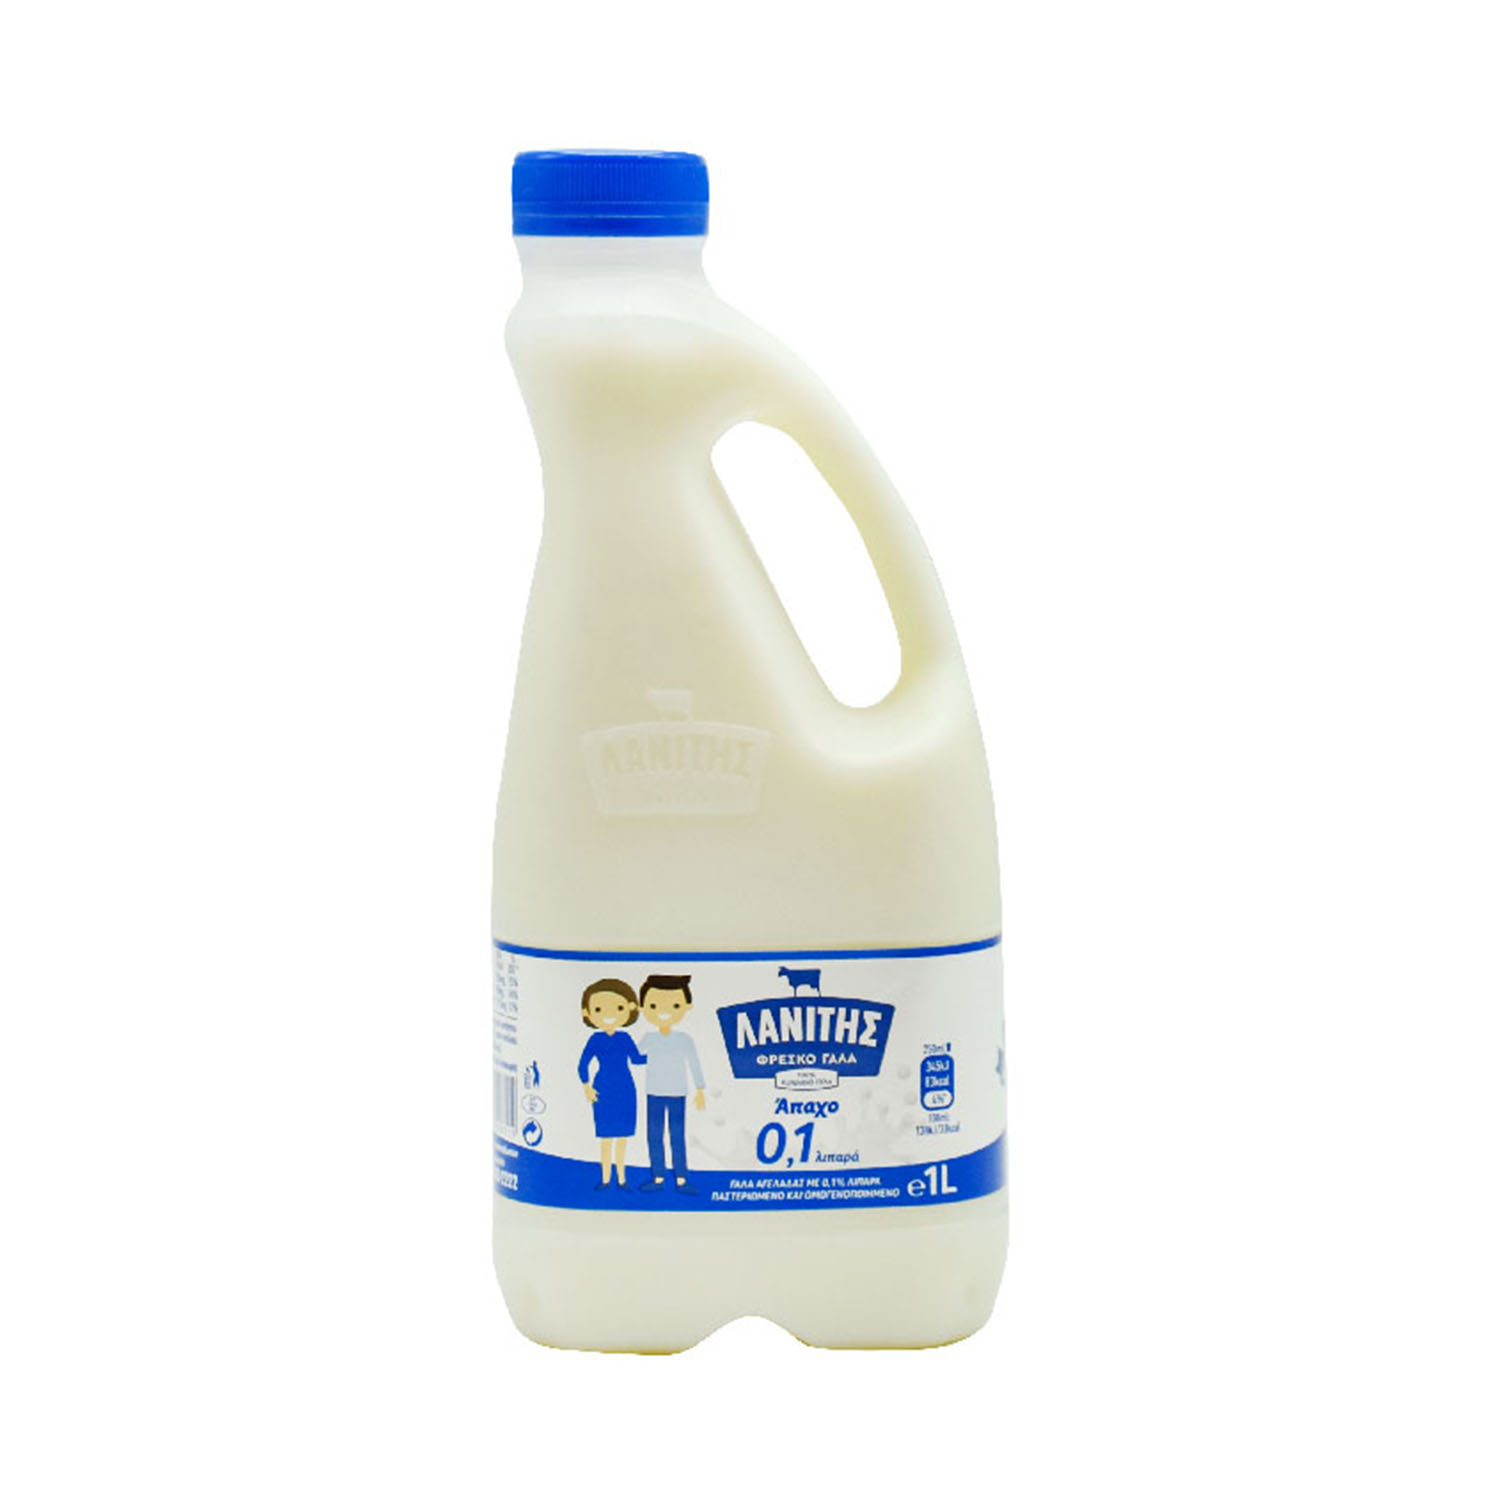 Milk Lanitis 0.1%